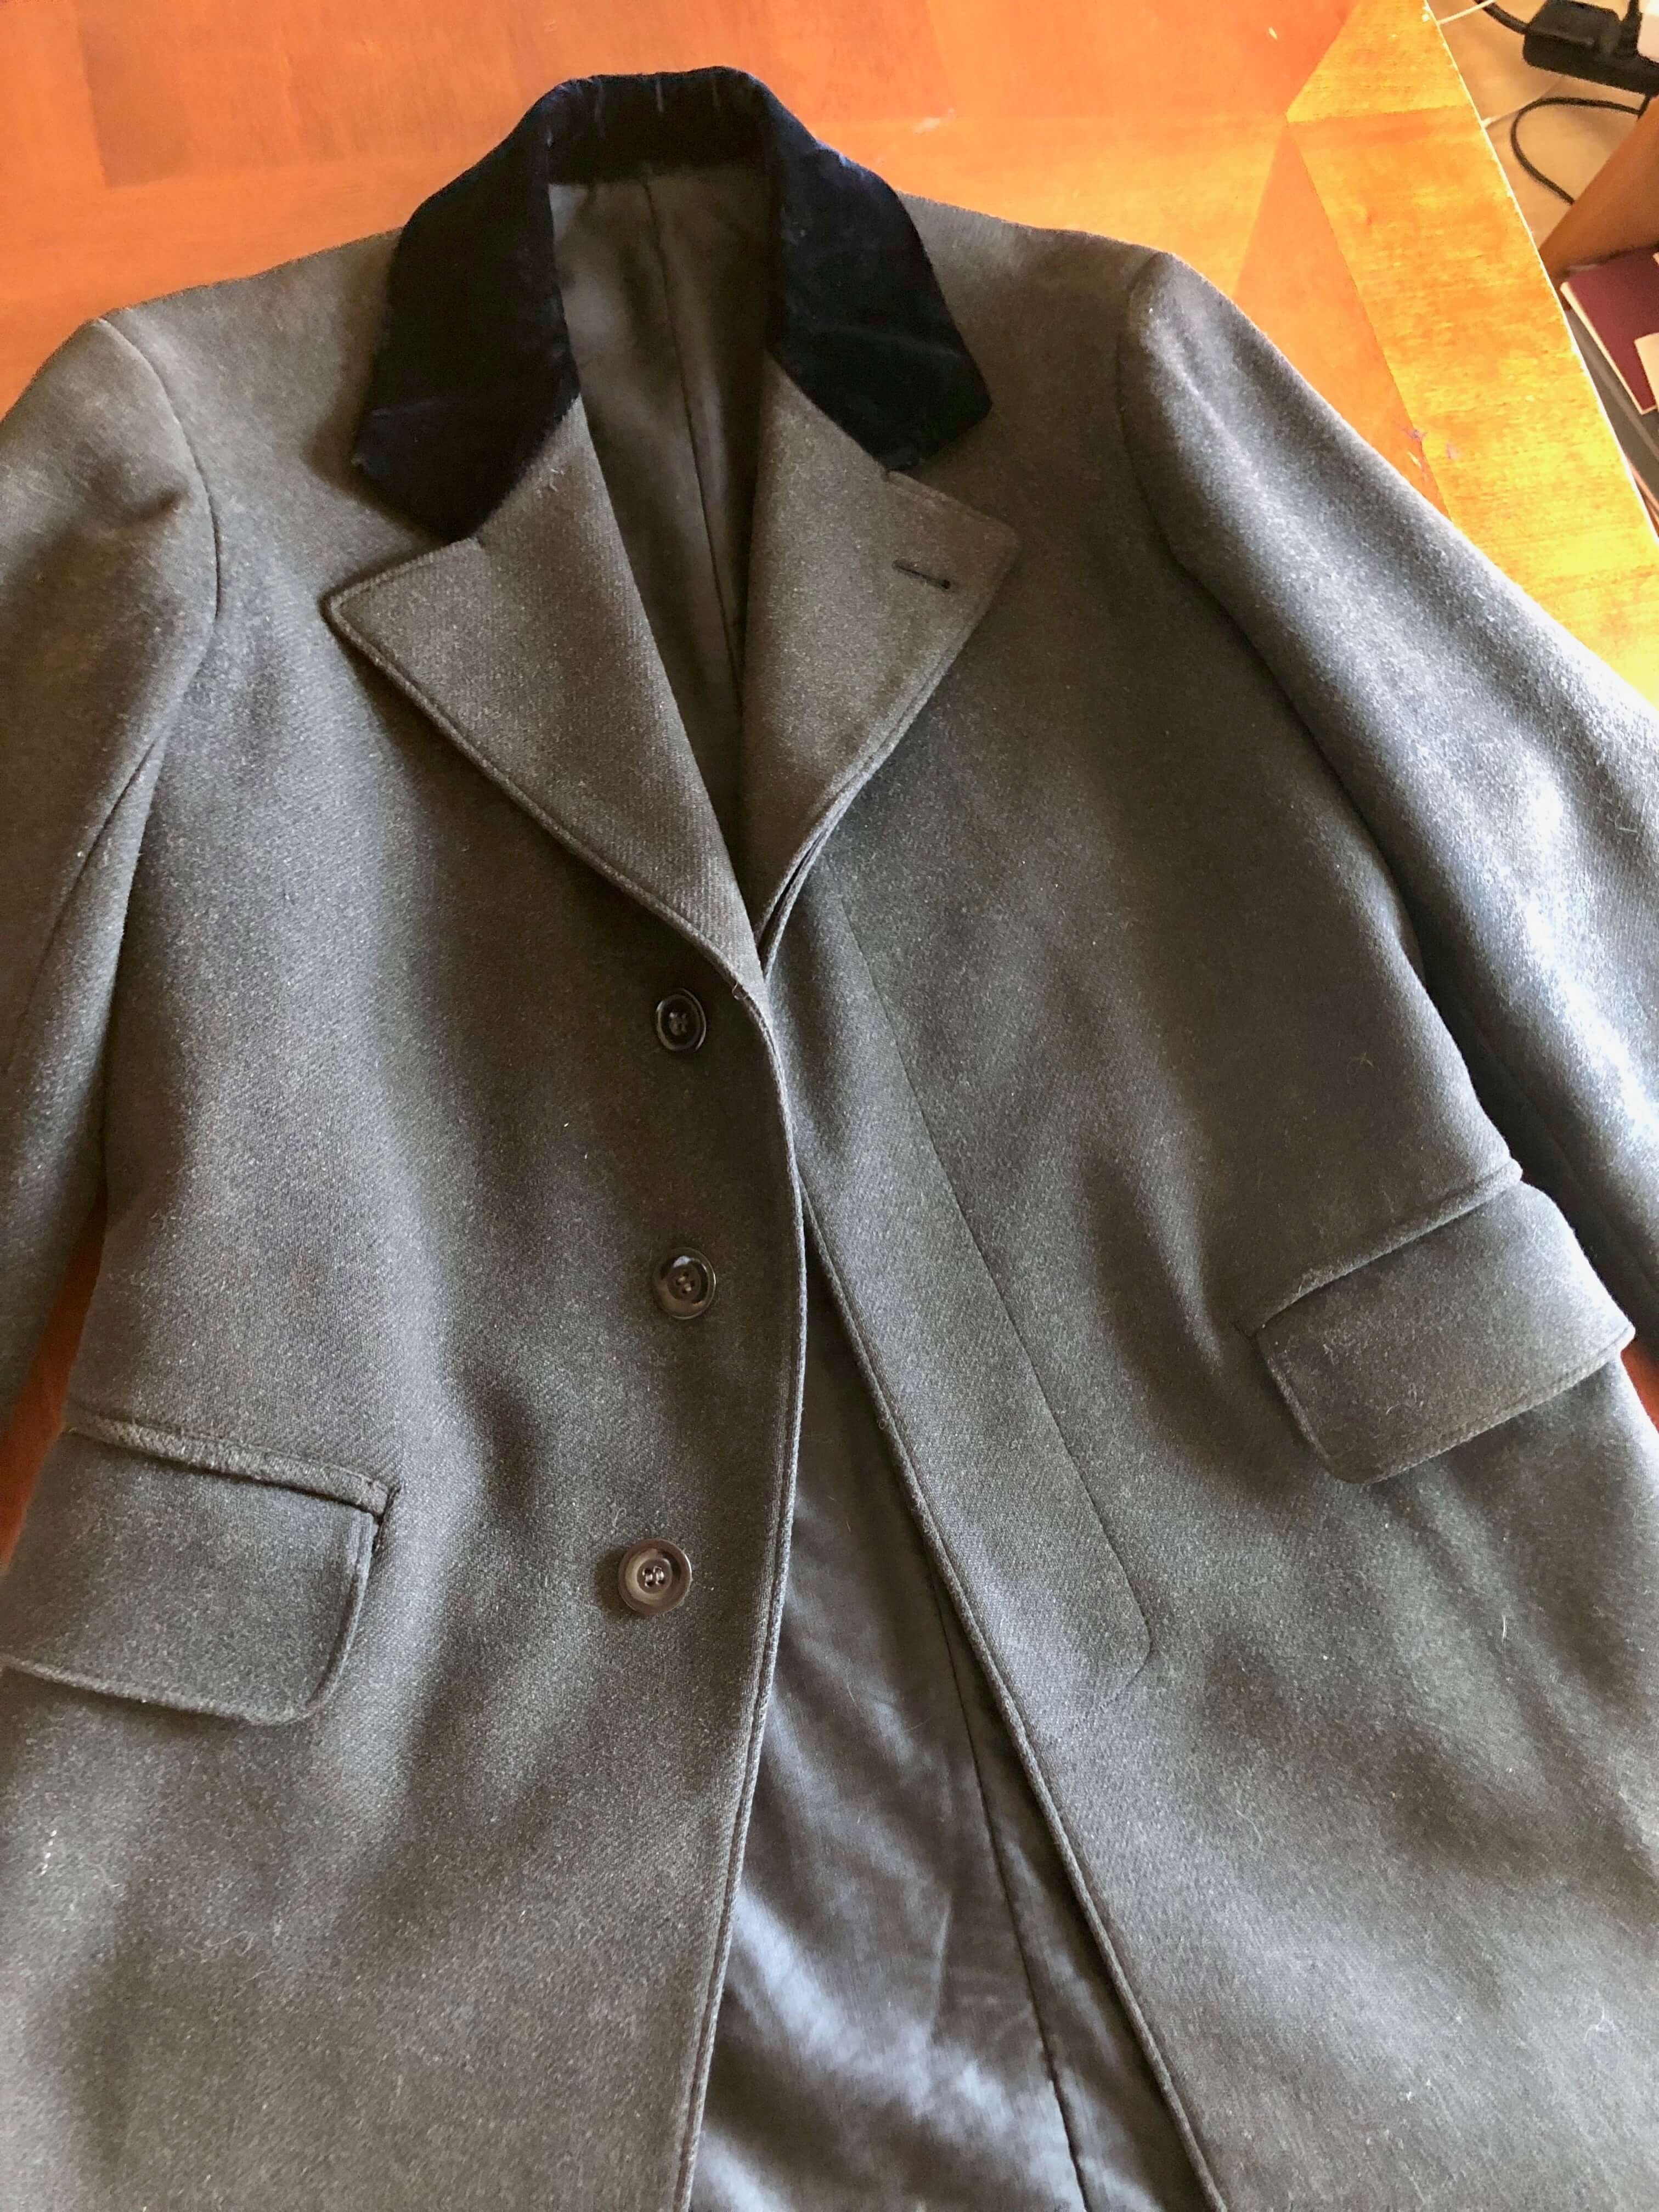 Original Edwardian Era Top Coat / Overcoat | The Fedora Lounge